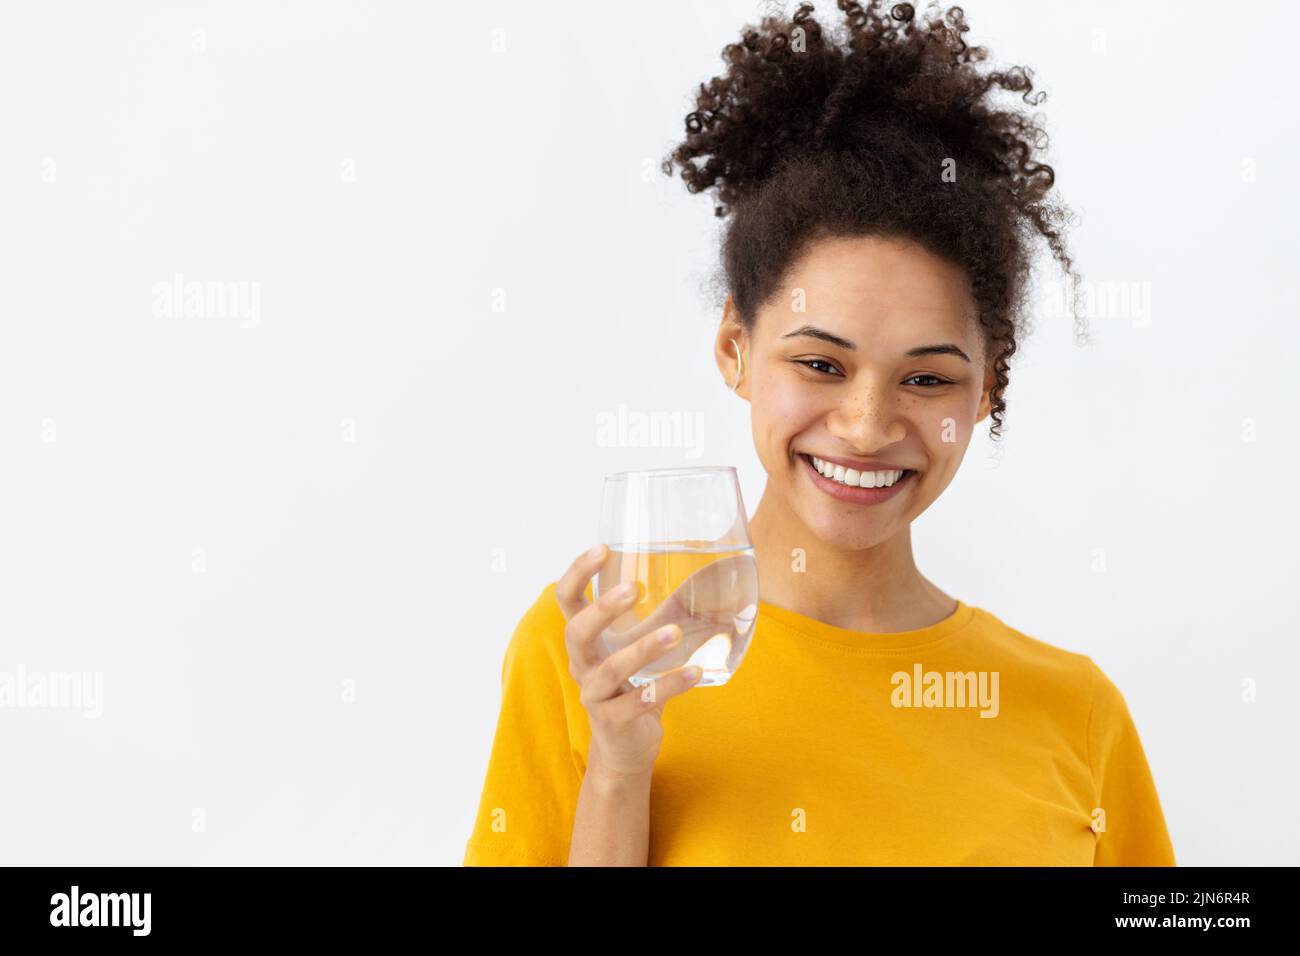 Gesunder Lebensstil lächelnde junge Frau, die ein Glas frisches sauberes Wasser hält und die Kamera anschaut und freundlich lächelt Stockfoto